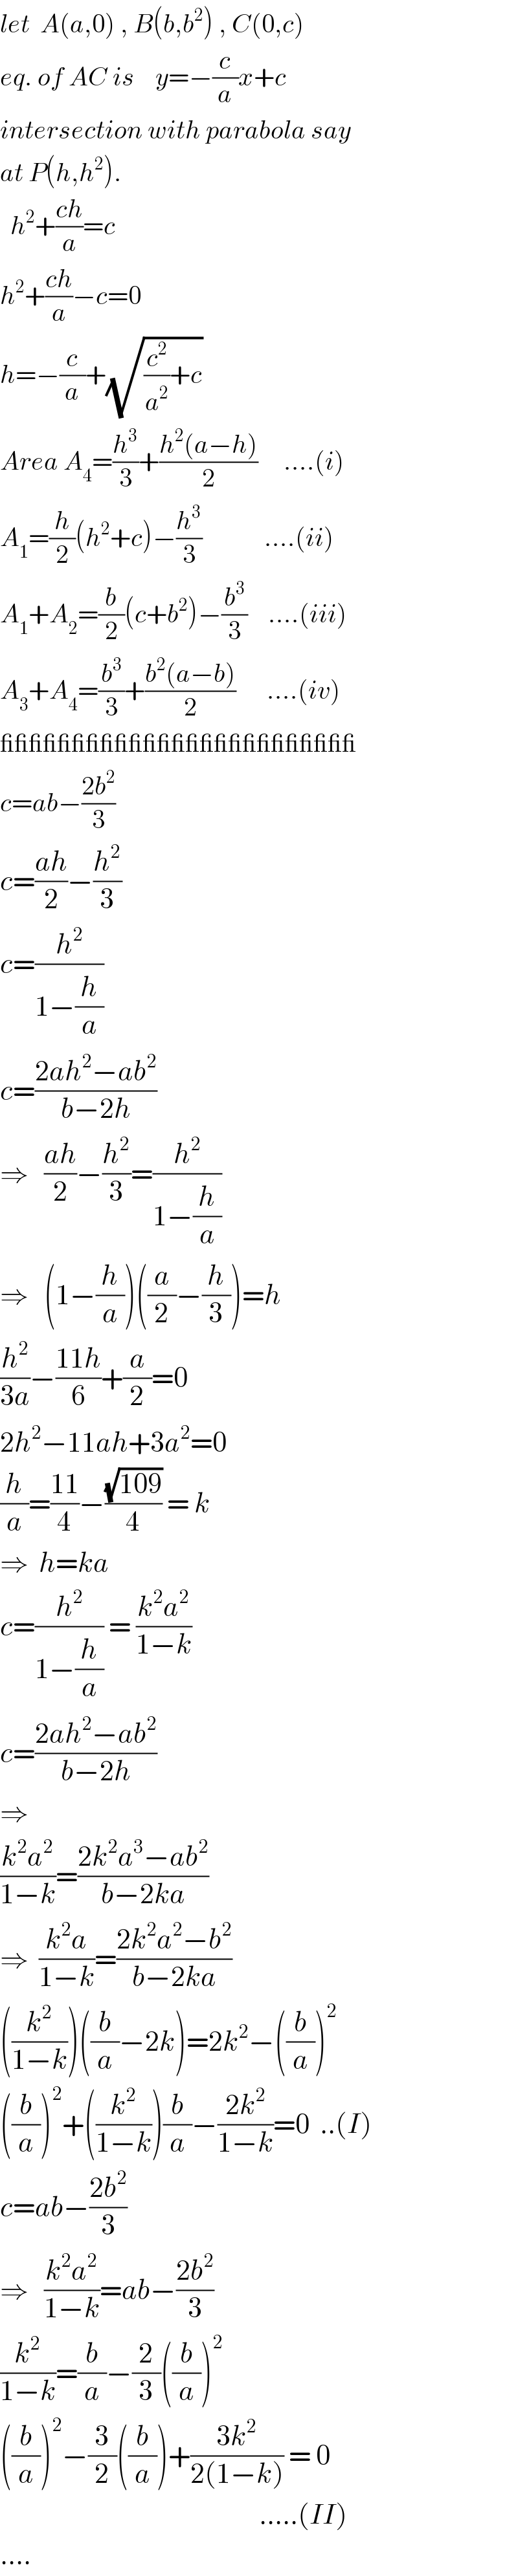 let  A(a,0) , B(b,b^2 ) , C(0,c)  eq. of AC is    y=−(c/a)x+c  intersection with parabola say  at P(h,h^2 ).    h^2 +((ch)/a)=c  h^2 +((ch)/a)−c=0  h=−(c/a)+(√((c^2 /a^2 )+c))  Area A_4 =(h^3 /3)+((h^2 (a−h))/2)     ....(i)  A_1 =(h/2)(h^2 +c)−(h^3 /3)            ....(ii)  A_1 +A_2 =(b/2)(c+b^2 )−(b^3 /3)    ....(iii)  A_3 +A_4 =(b^3 /3)+((b^2 (a−b))/2)      ....(iv)  _________________________  c=ab−((2b^2 )/3)  c=((ah)/2)−(h^2 /3)  c=(h^2 /(1−(h/a)))  c=((2ah^2 −ab^2 )/(b−2h))  ⇒   ((ah)/2)−(h^2 /3)=(h^2 /(1−(h/a)))  ⇒   (1−(h/a))((a/2)−(h/3))=h  (h^2 /(3a))−((11h)/6)+(a/2)=0  2h^2 −11ah+3a^2 =0  (h/a)=((11)/4)−((√(109))/4) = k  ⇒  h=ka  c=(h^2 /(1−(h/a))) = ((k^2 a^2 )/(1−k))  c=((2ah^2 −ab^2 )/(b−2h))  ⇒    ((k^2 a^2 )/(1−k))=((2k^2 a^3 −ab^2 )/(b−2ka))  ⇒  ((k^2 a)/(1−k))=((2k^2 a^2 −b^2 )/(b−2ka))  ((k^2 /(1−k)))((b/a)−2k)=2k^2 −((b/a))^2   ((b/a))^2 +((k^2 /(1−k)))(b/a)−((2k^2 )/(1−k))=0  ..(I)  c=ab−((2b^2 )/3)  ⇒   ((k^2 a^2 )/(1−k))=ab−((2b^2 )/3)  (k^2 /(1−k))=(b/a)−(2/3)((b/a))^2      ((b/a))^2 −(3/2)((b/a))+((3k^2 )/(2(1−k))) = 0                                                     .....(II)  ....  